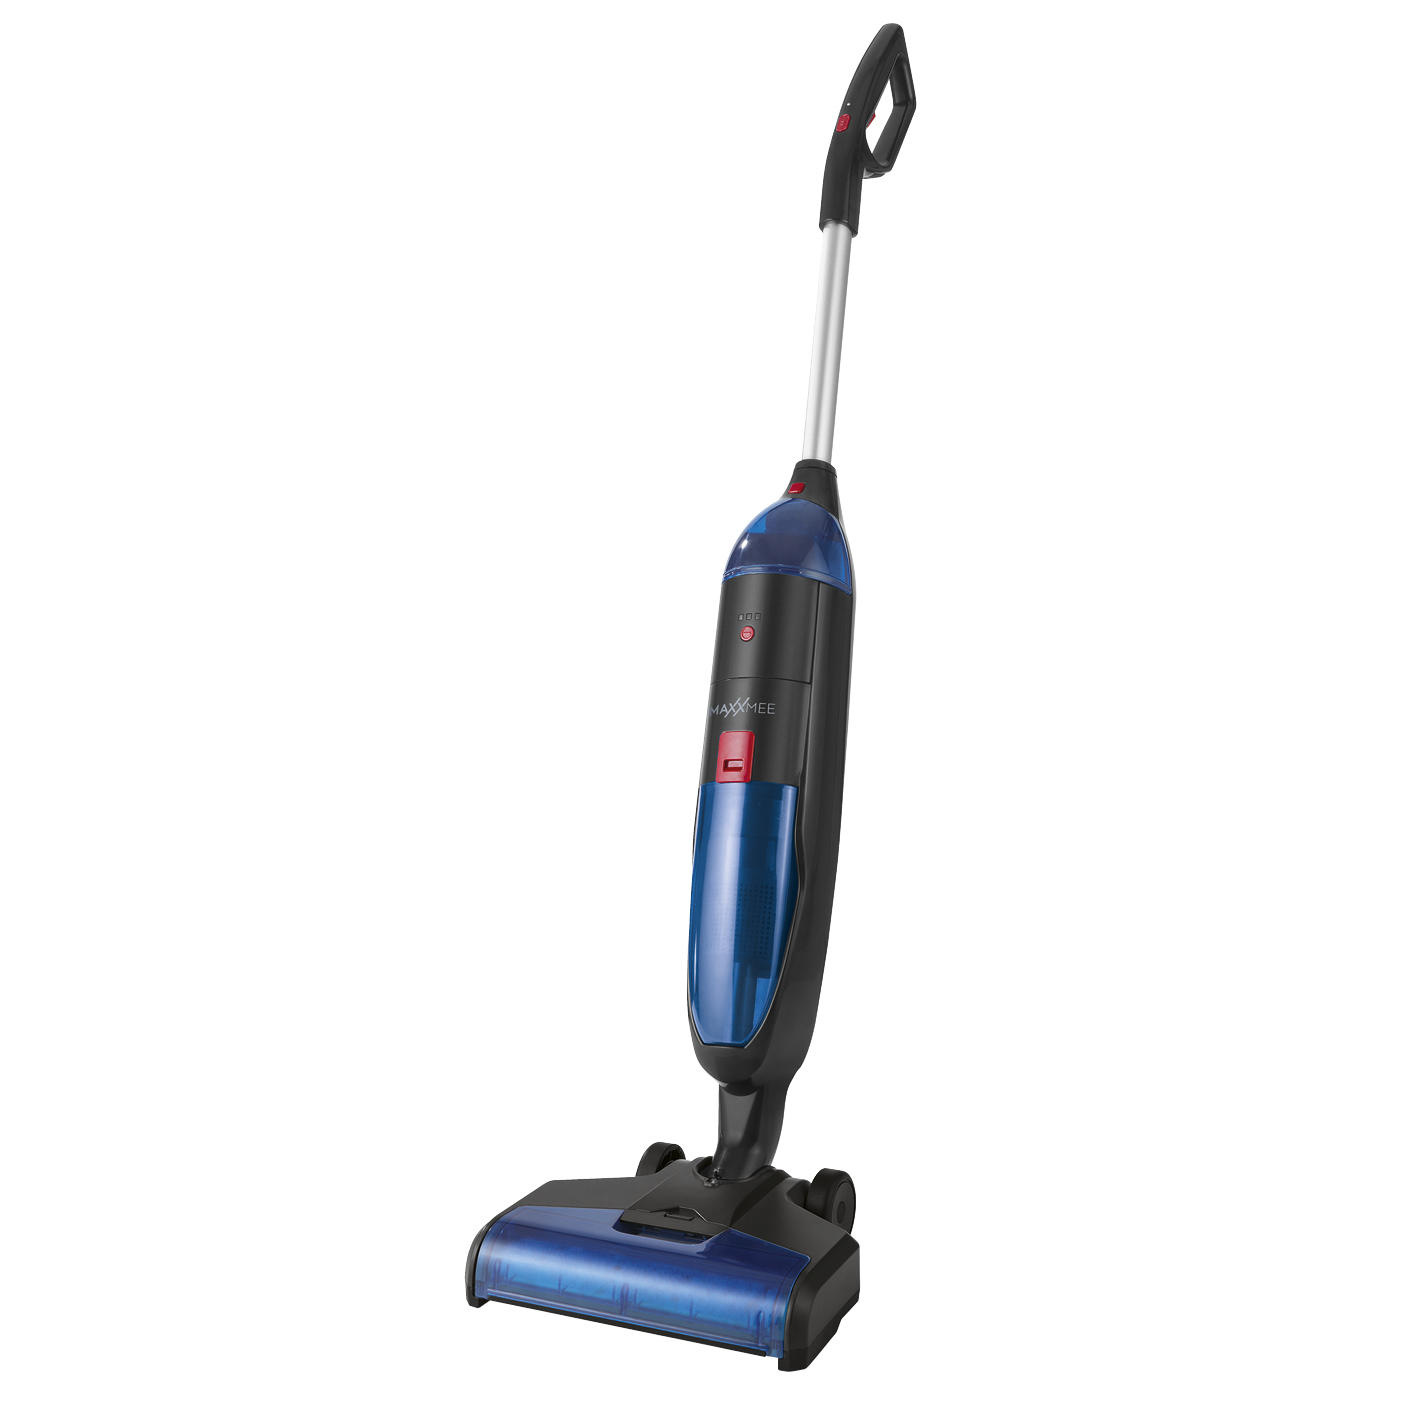 Wielofunkcyjny odkurzacz myjący do podłogi MAXXMEE  czarno/niebieski 04518